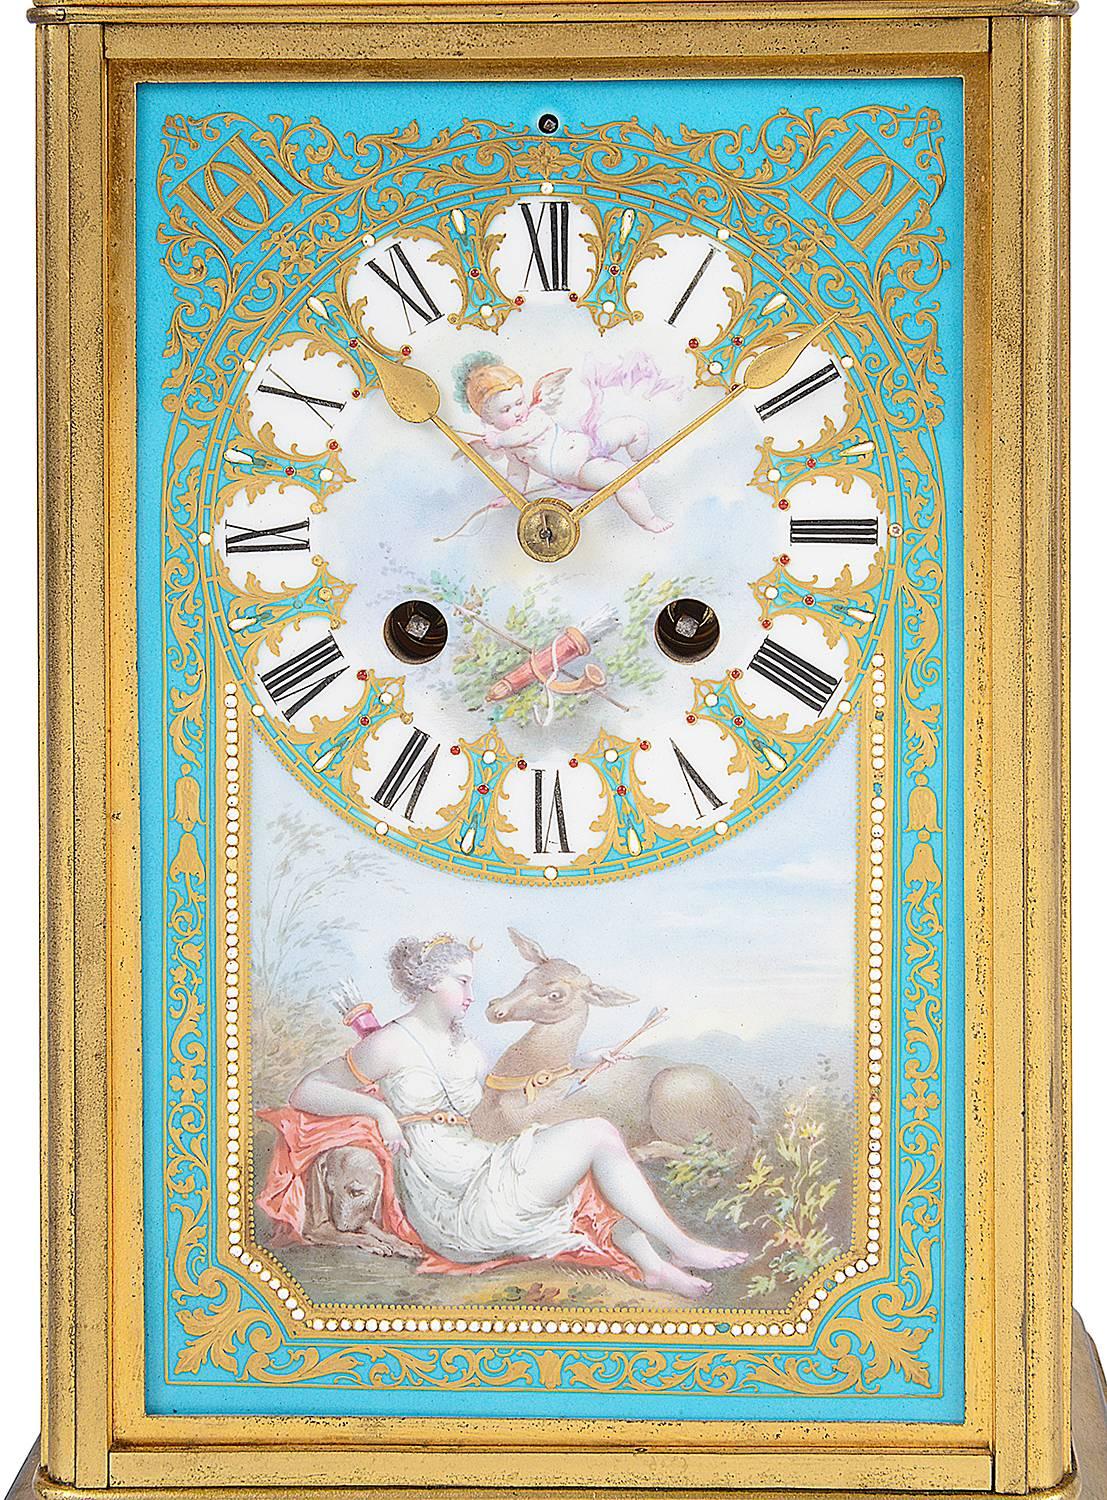 Eine ungewöhnliche und sehr gute Qualität 19. Jahrhundert Französisch Sèvres Stil Porzellan und vergoldeten Ormolu Kaminsims Uhr. Gewölbter Deckel mit gemalter Szene eines Horn spielenden Kindes auf türkisfarbenem Grund mit vergoldetem Dekor. Das